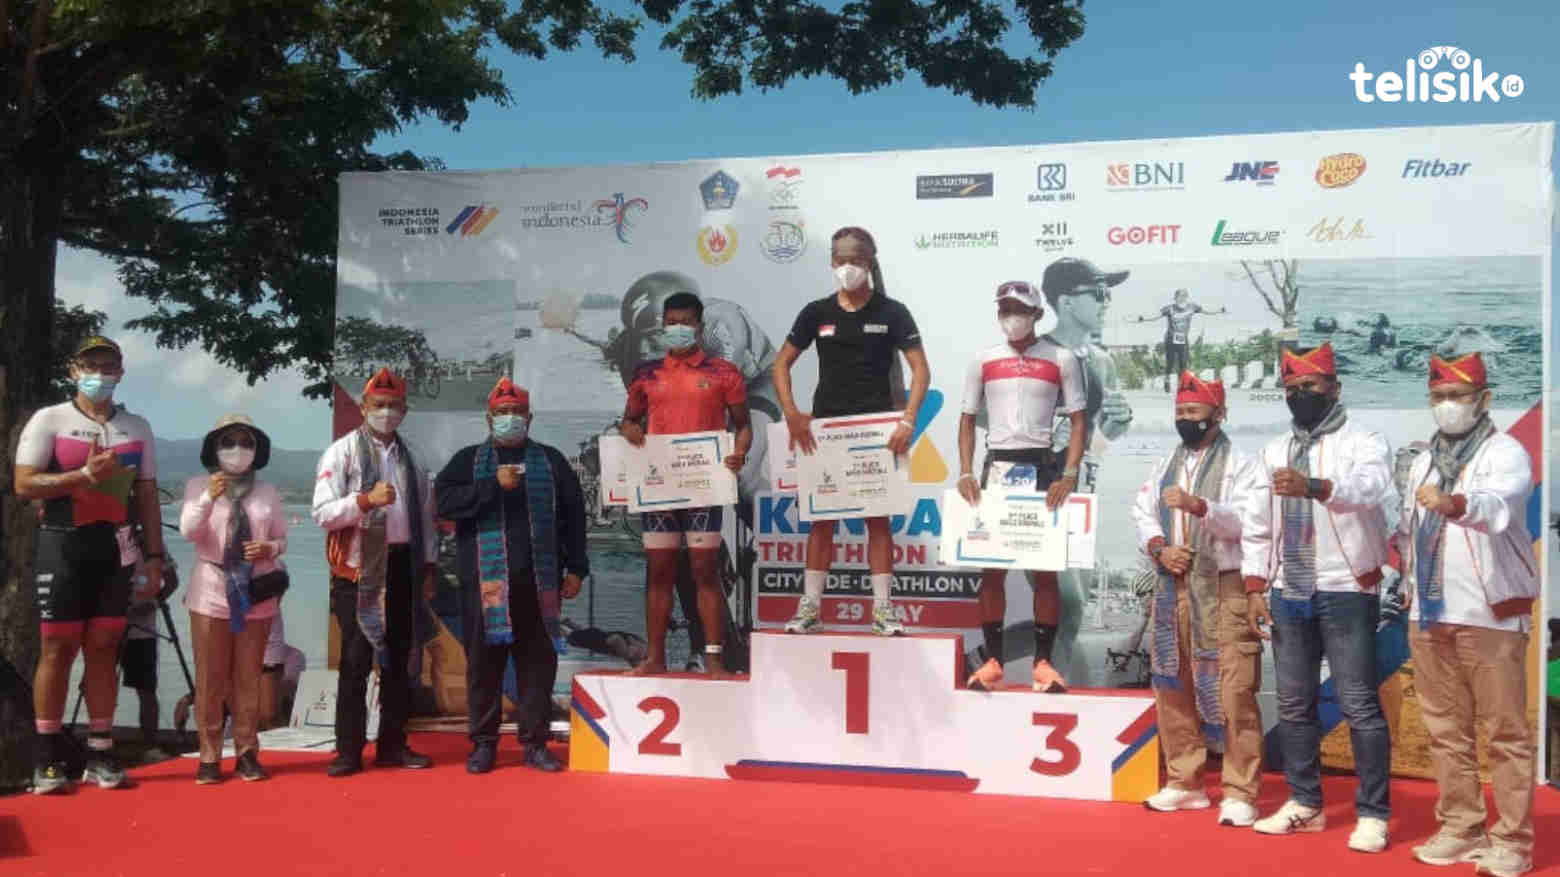 Juara Kendari Triatlhon 2021 Didominasi Atlet Jawa Timur, Dapat Bonus dari KONI Sultra